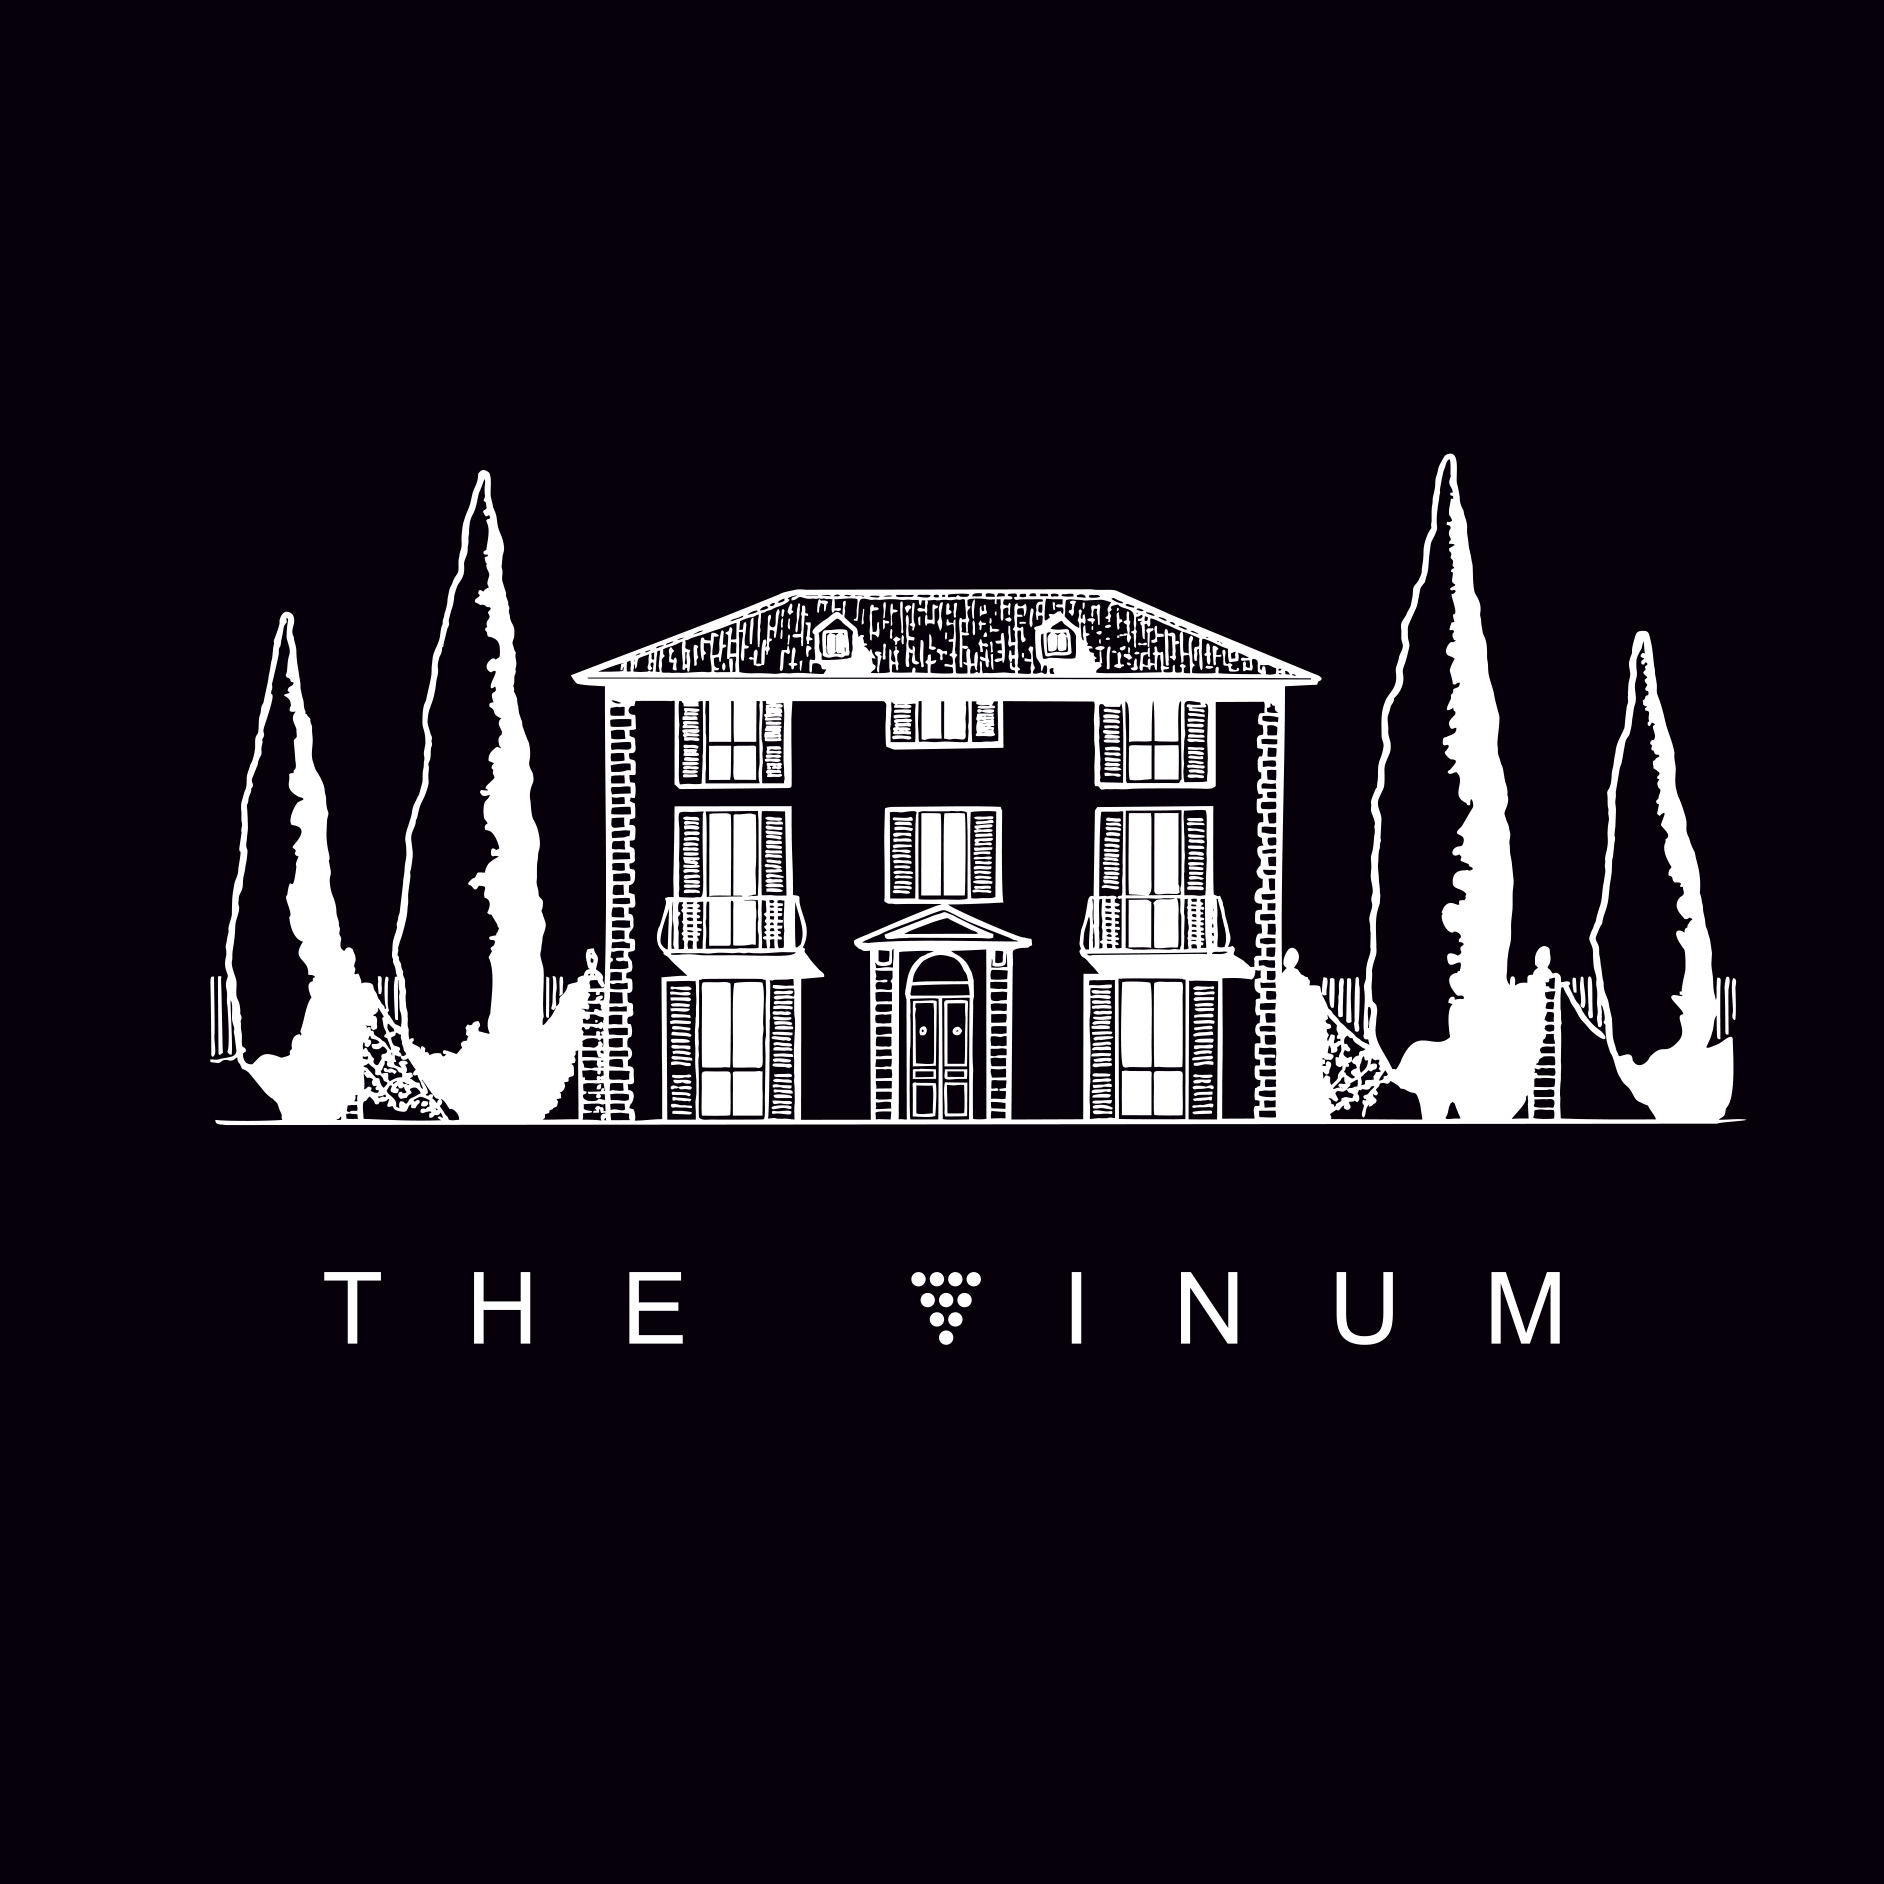 THE VINUM